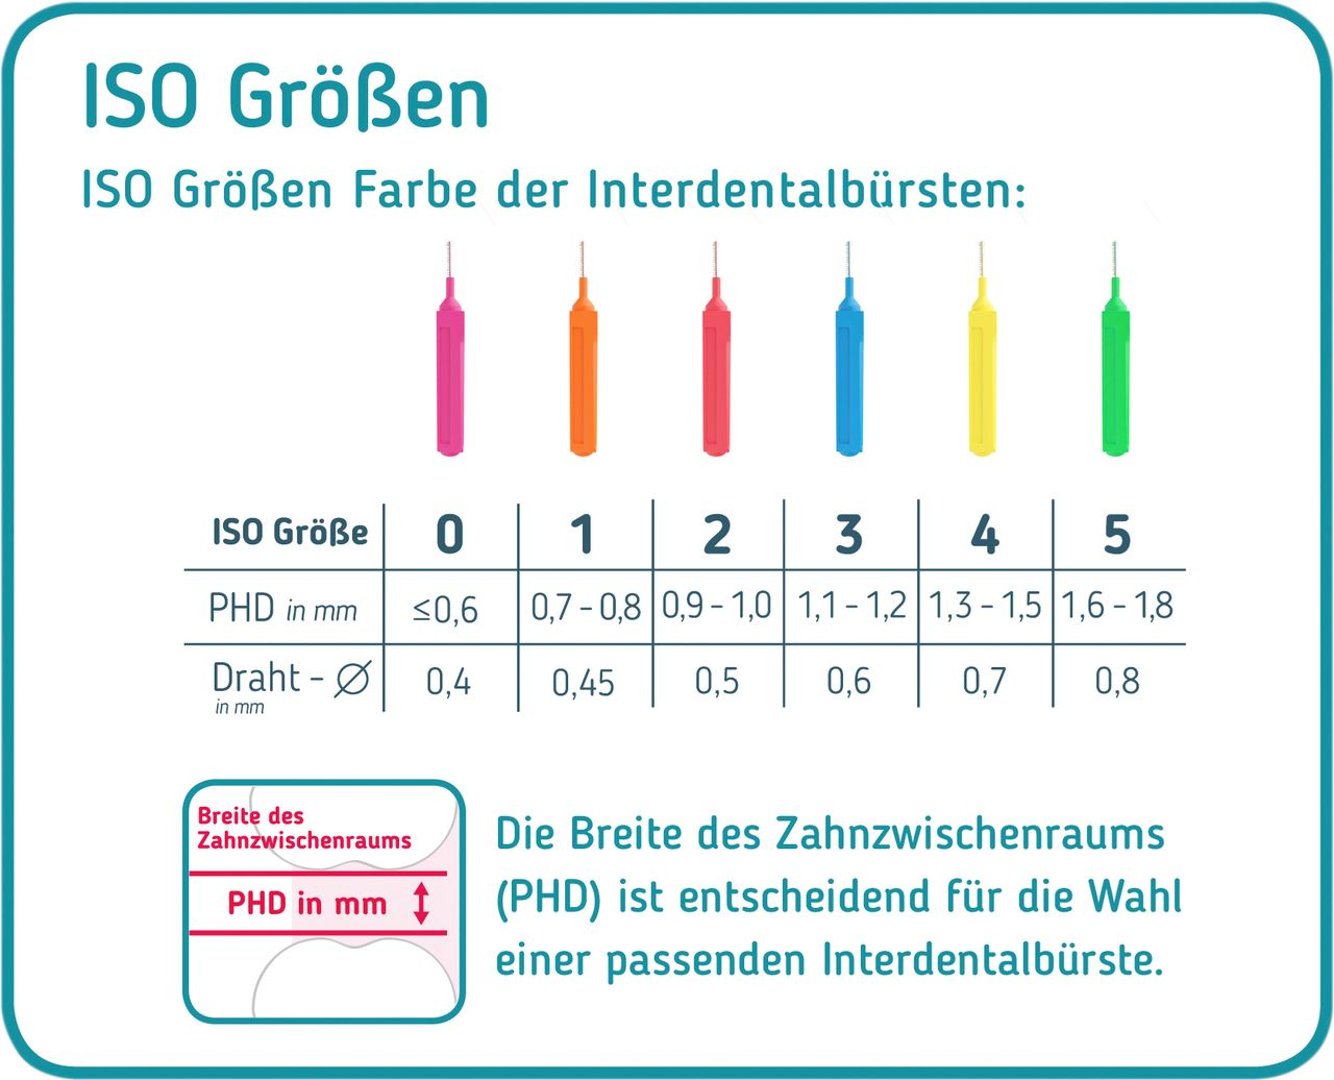 Mara Expert Interdentalbürste 14er ISO 3, 0,6 mm mittel breit